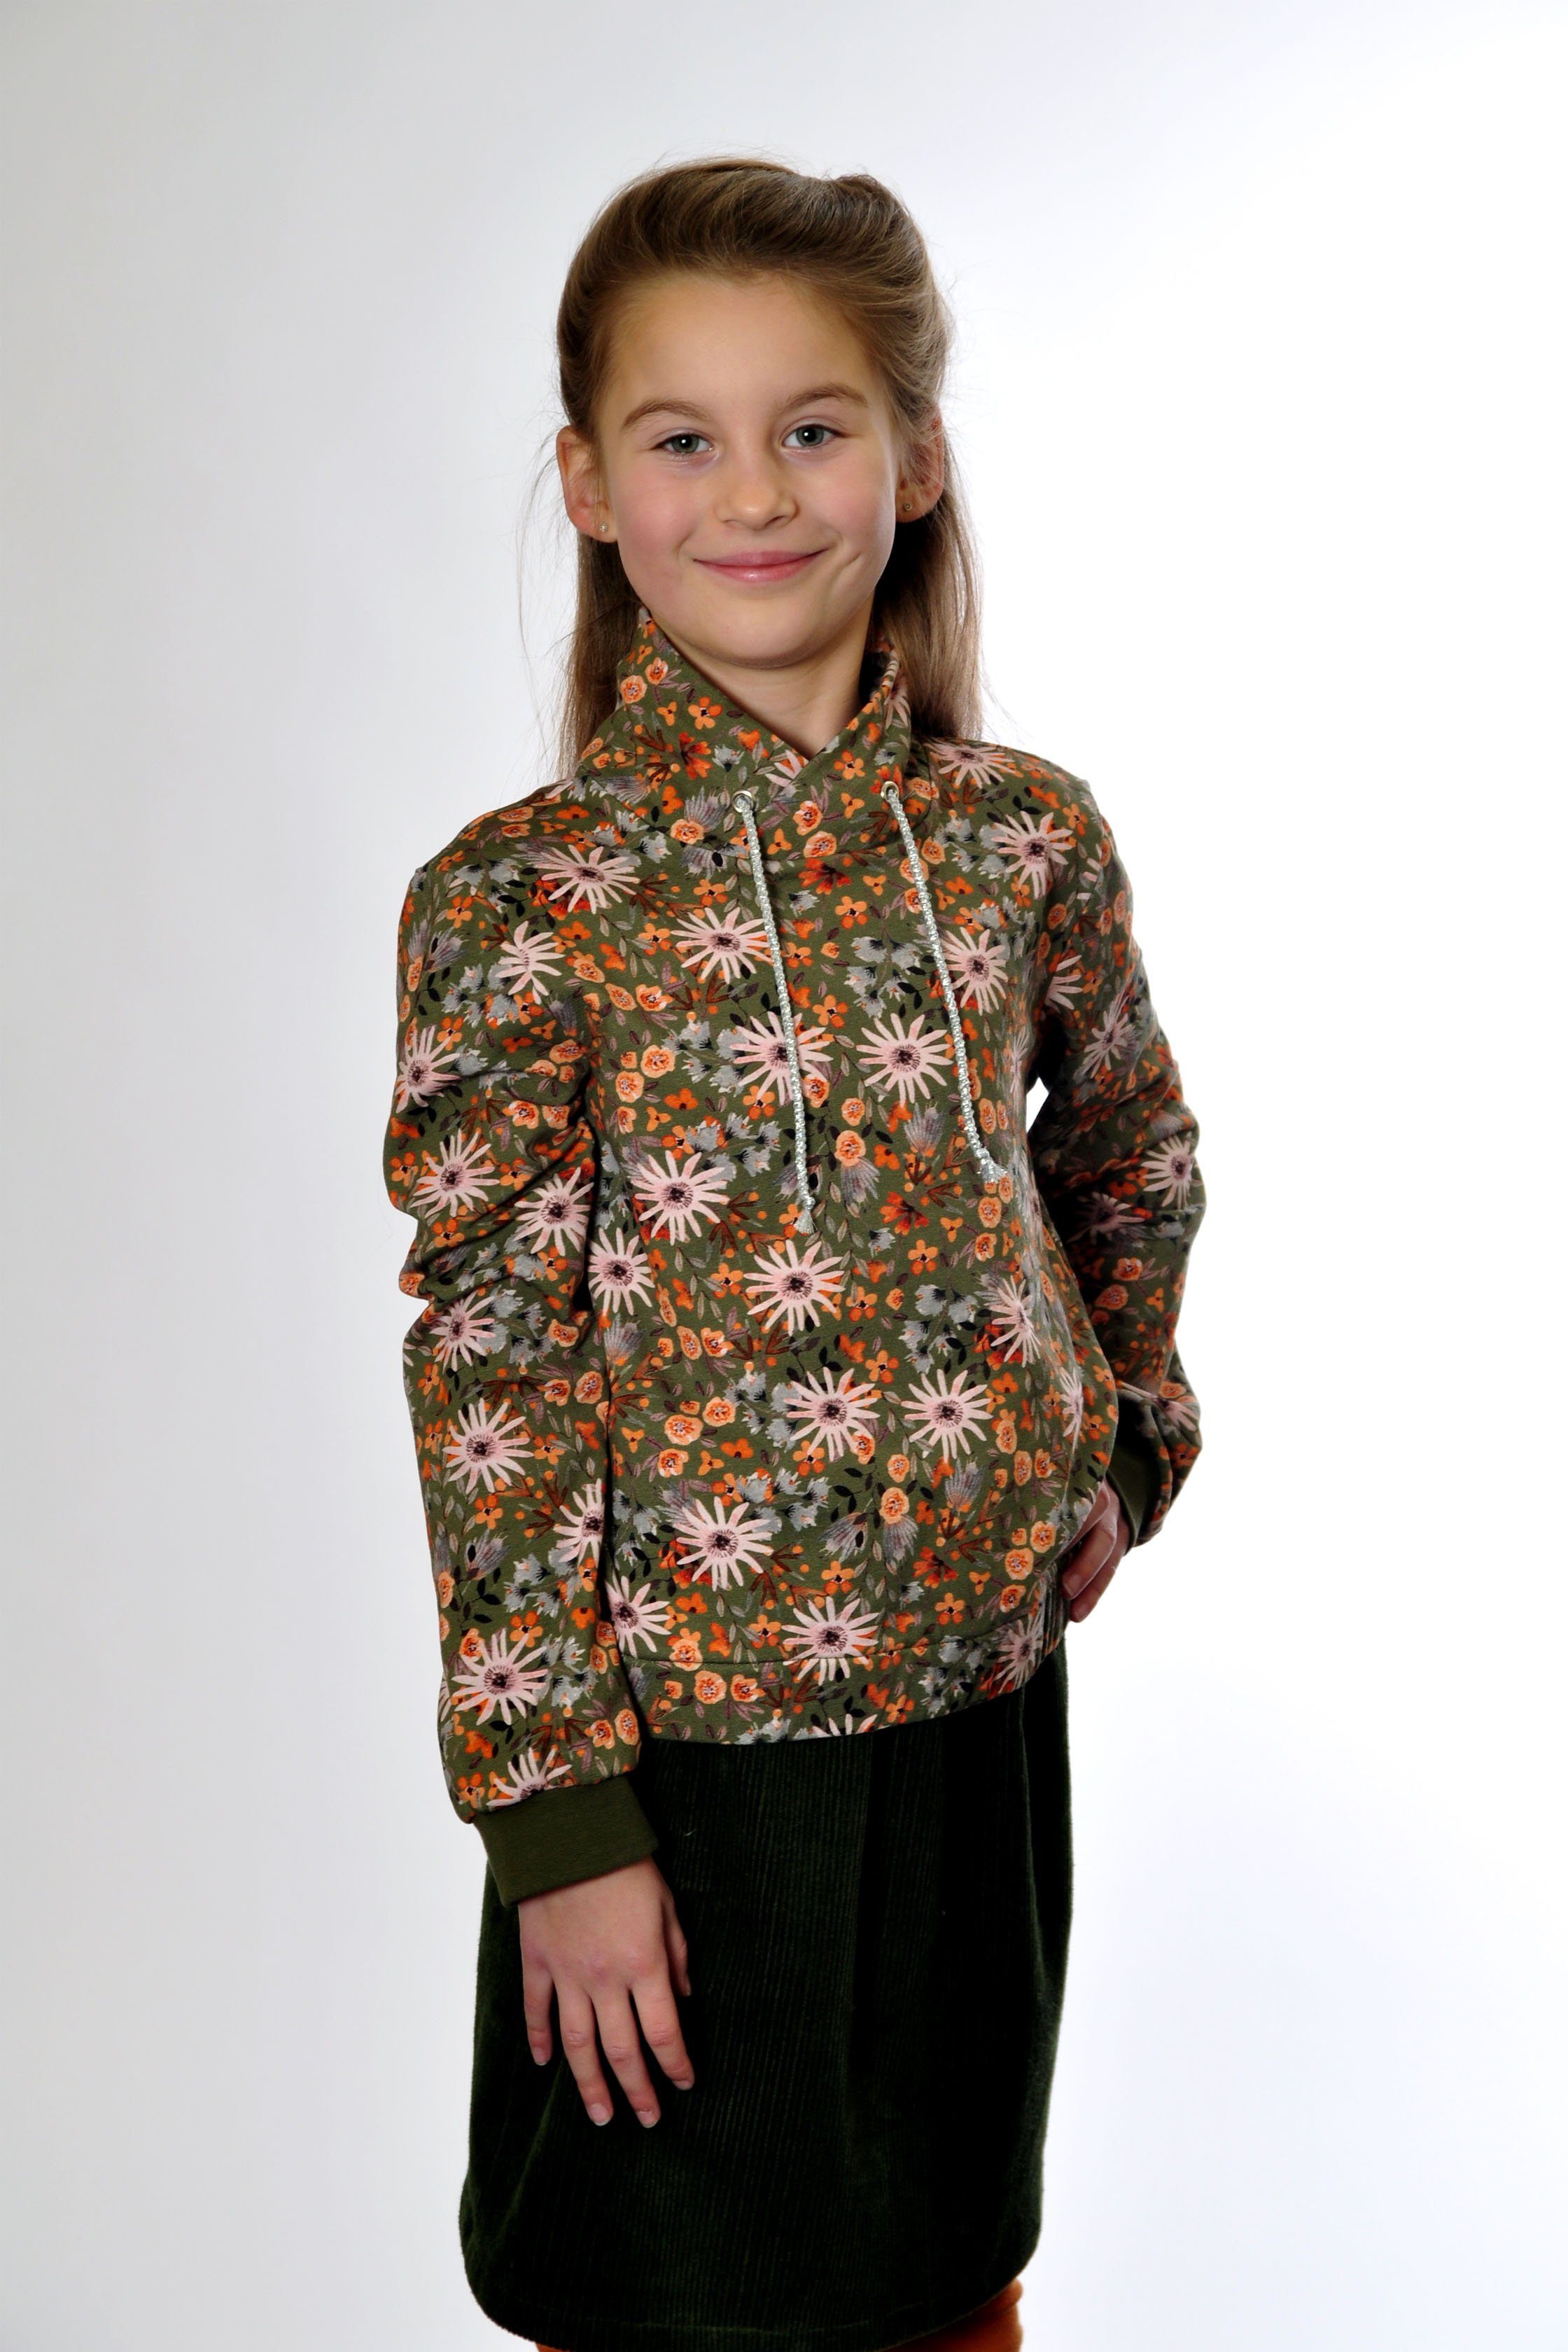 europäische Produktion mit Sweater Blumen-Motivdruck oliv coolismo Sweatshirt Baumwolle, für Mädchen